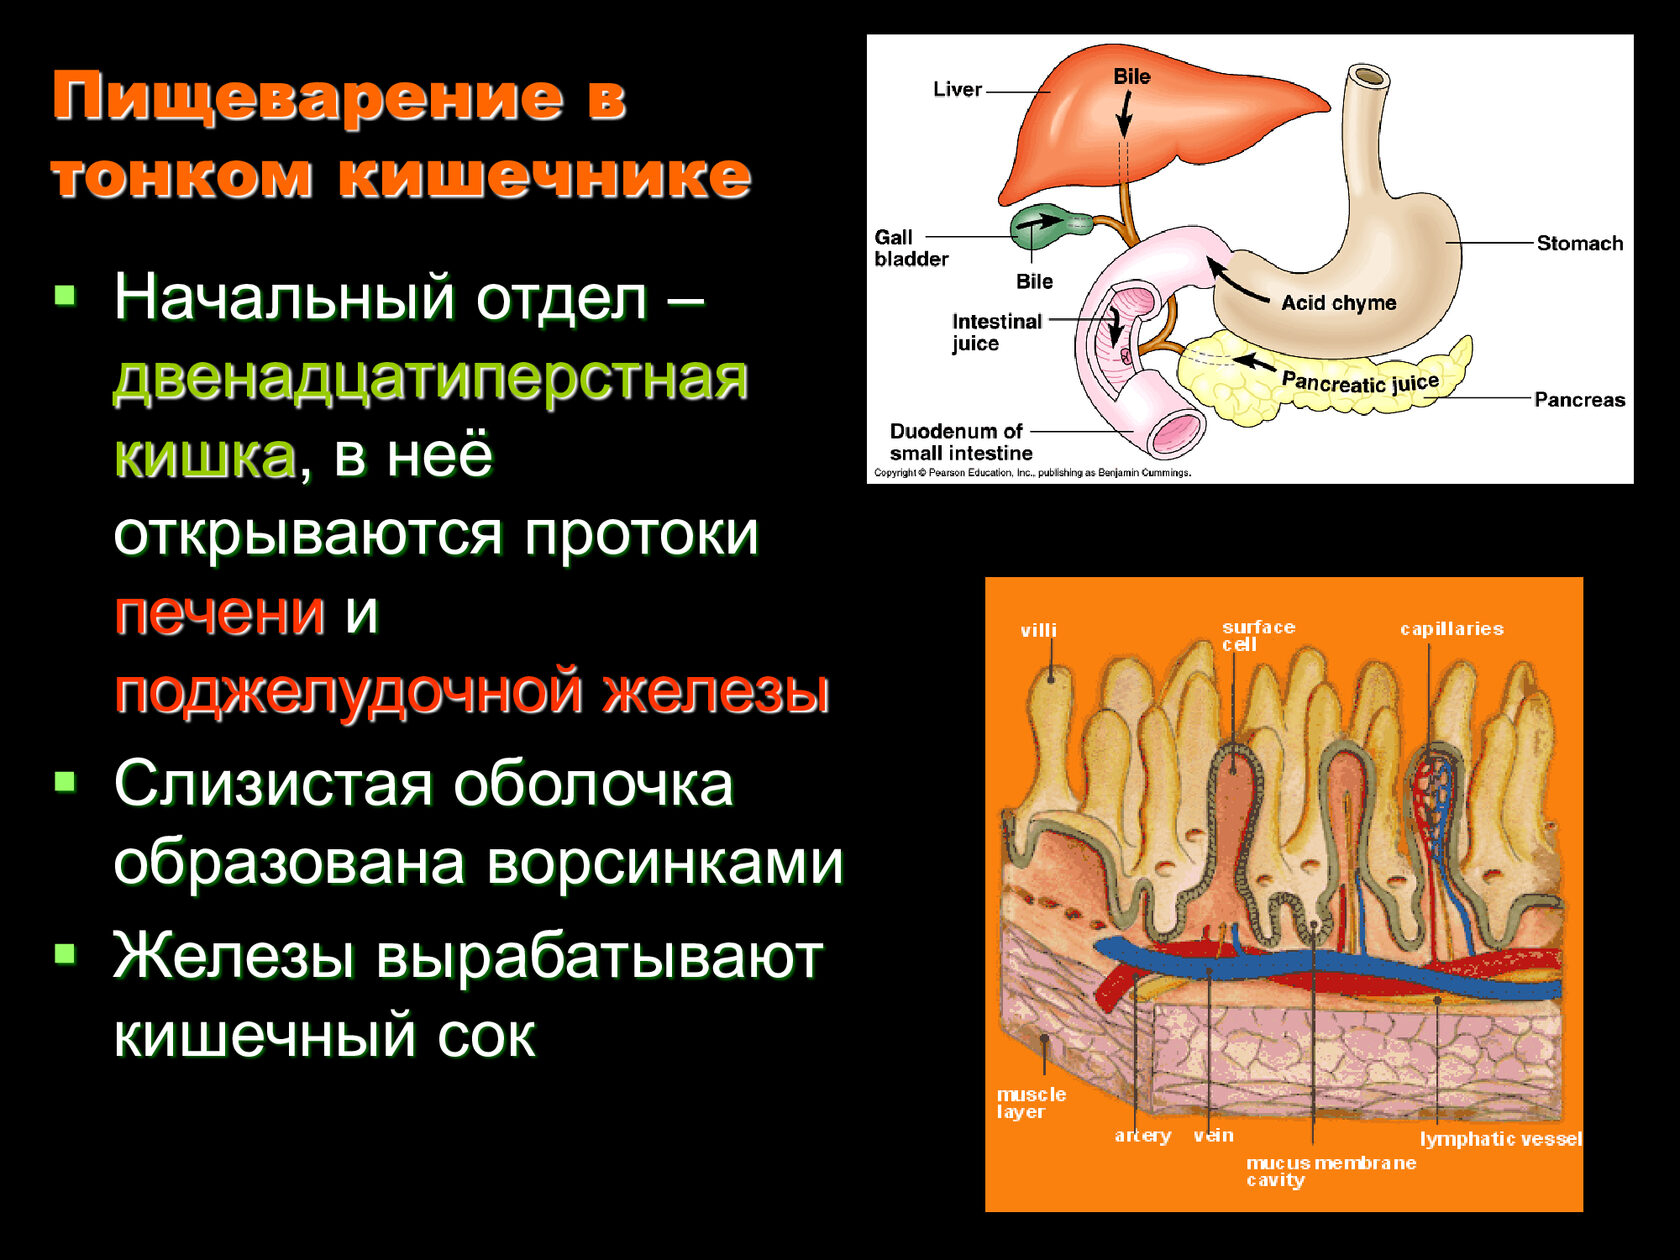 Какие есть пищеварительные железы. Пищеварительные железы тонкого кишечника. Пищеварительные железы и соки в тонком кишечнике. Пищеворителтные желещв. Железы тонкого кишечника строение.